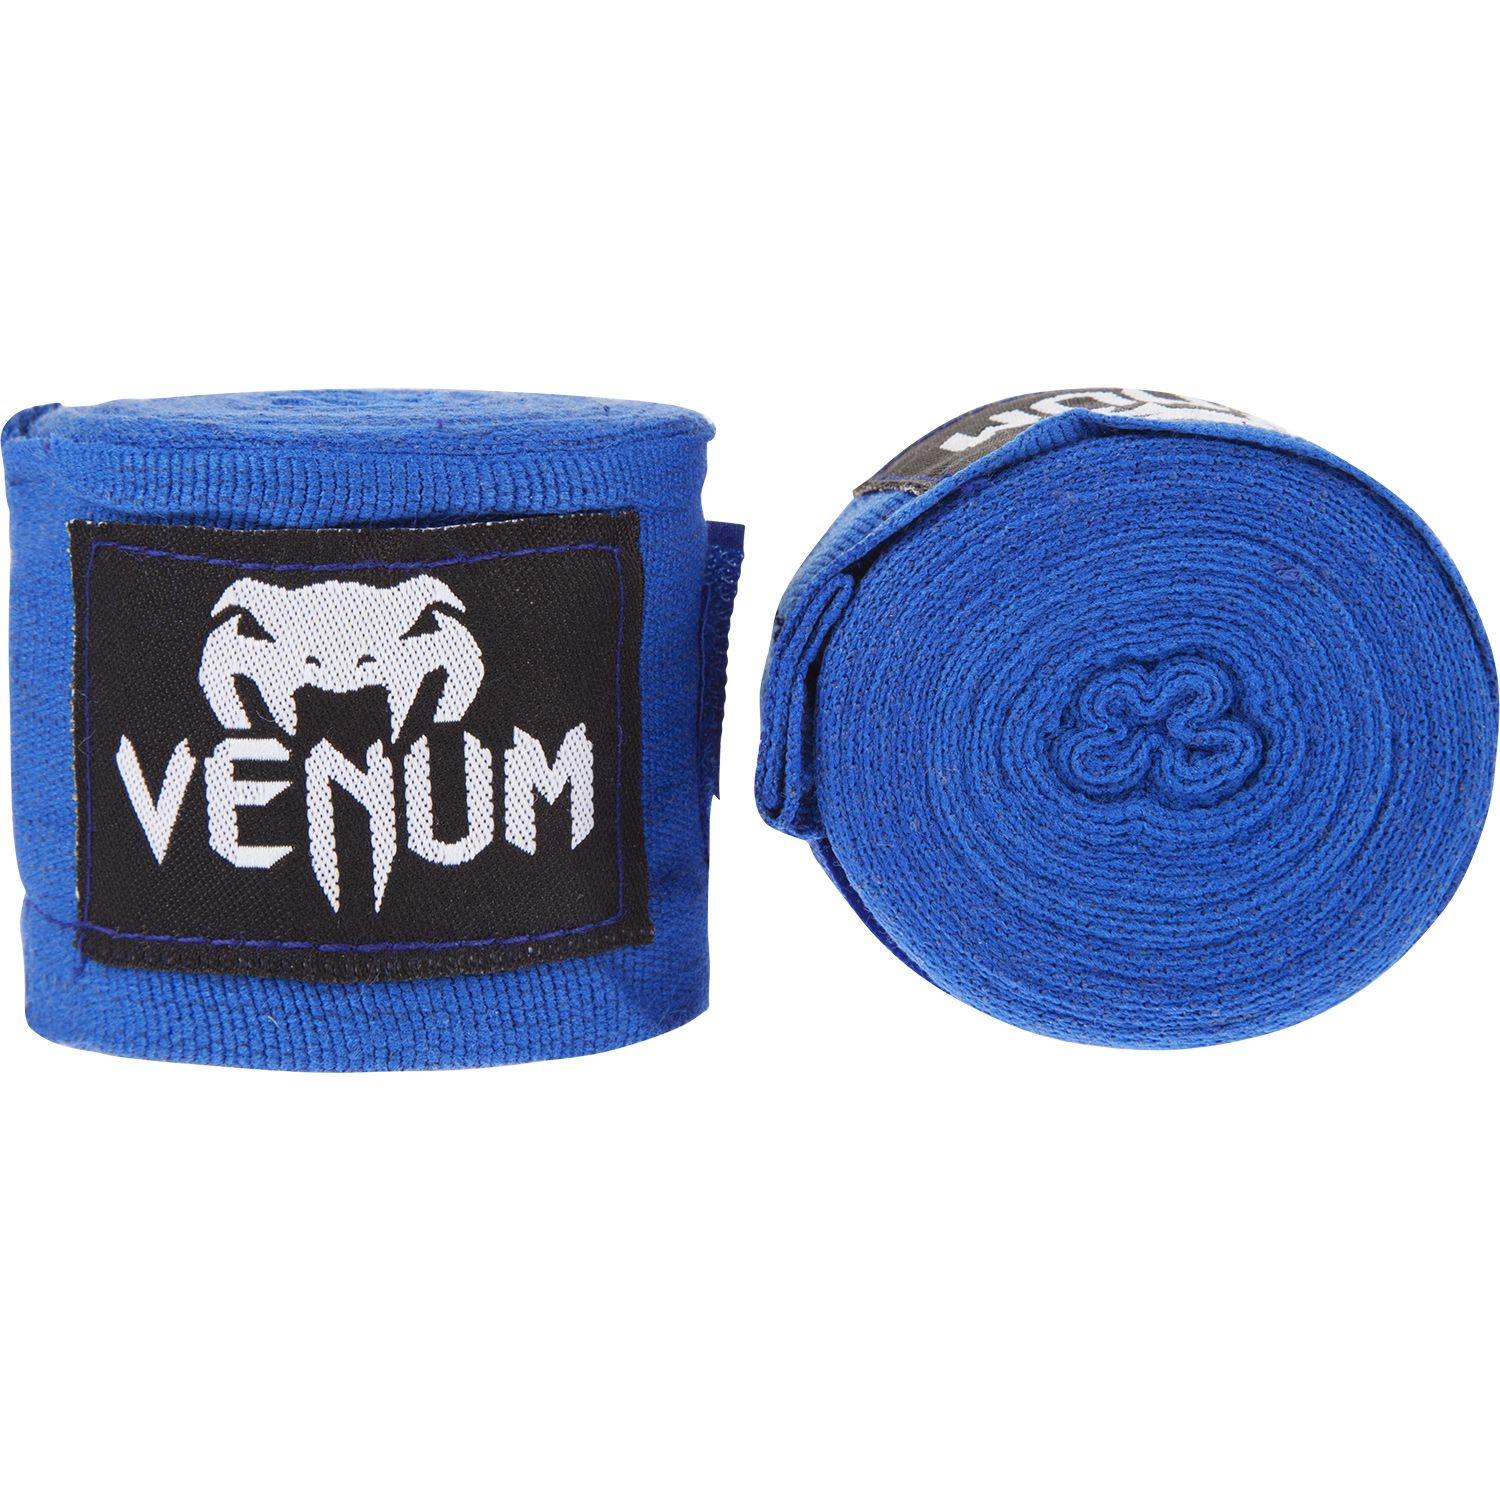 Venum Boxing Handwraps - image 1 of 4